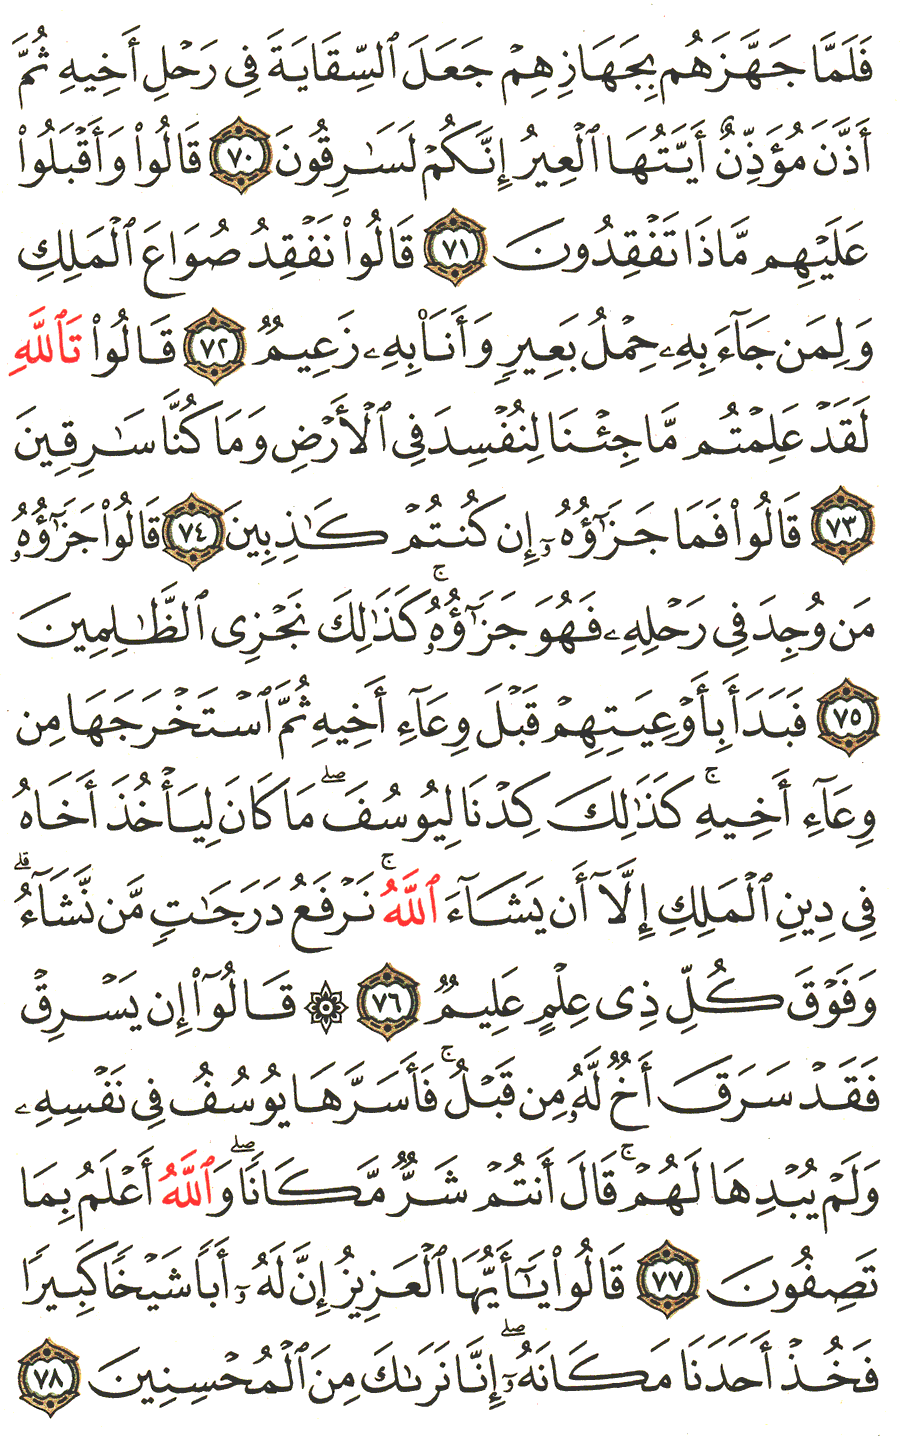 الصفحة 244 من القرآن الكريم